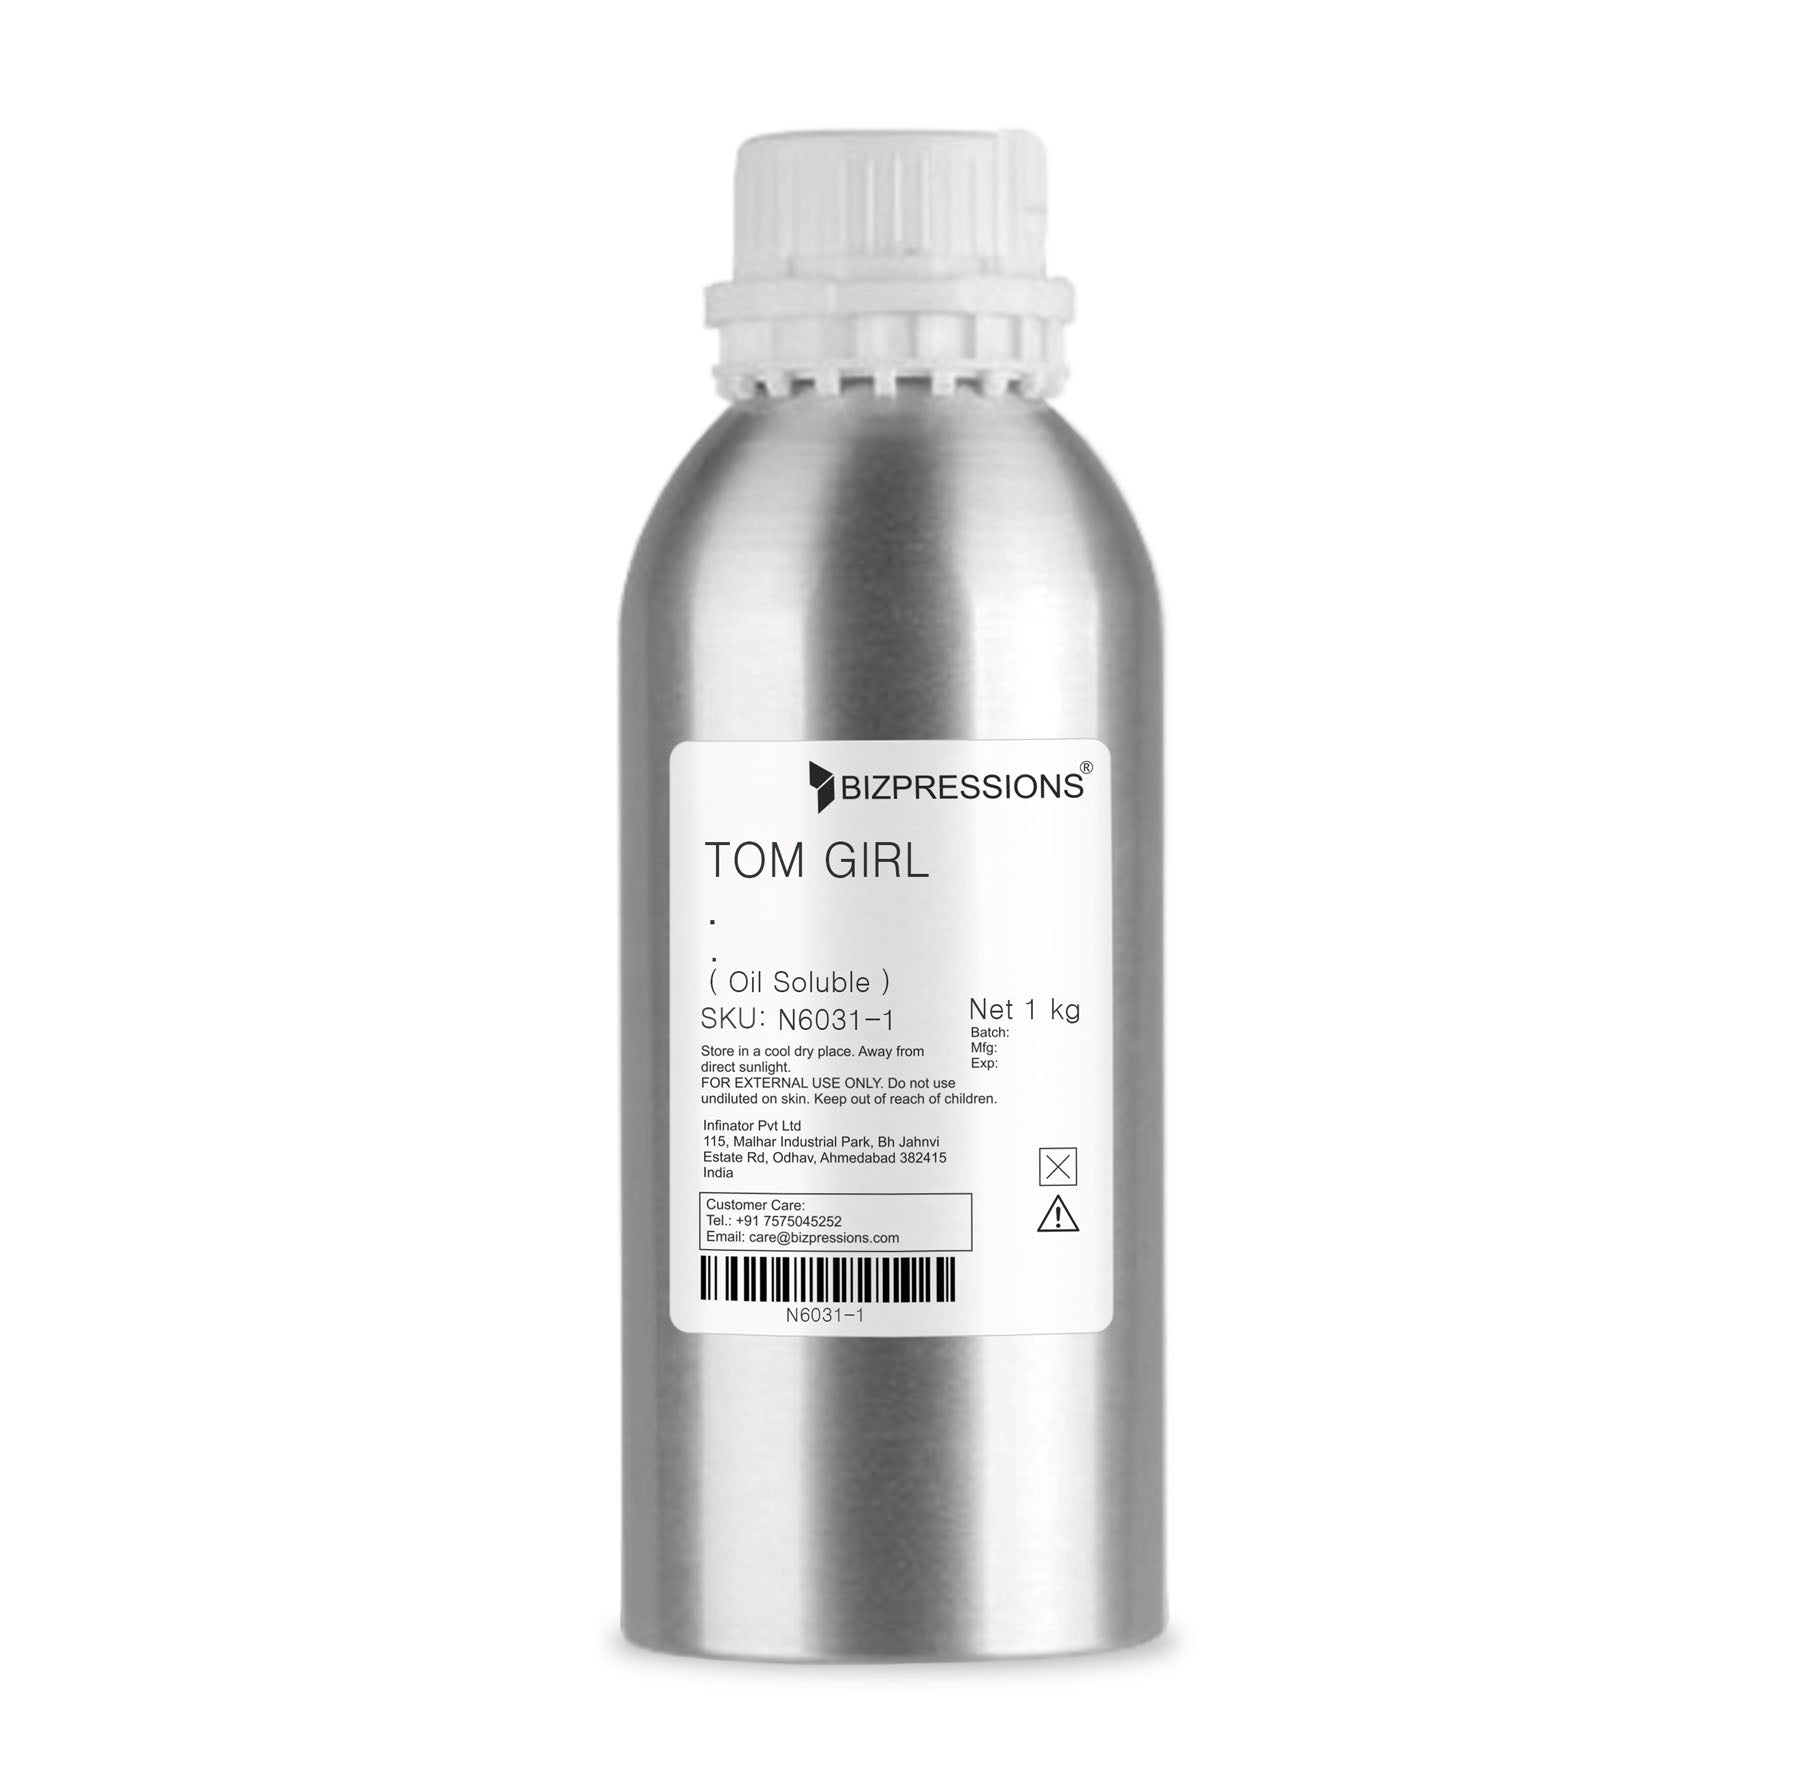 TOM GIRL - Fragrance ( Oil Soluble ) - 1 kg